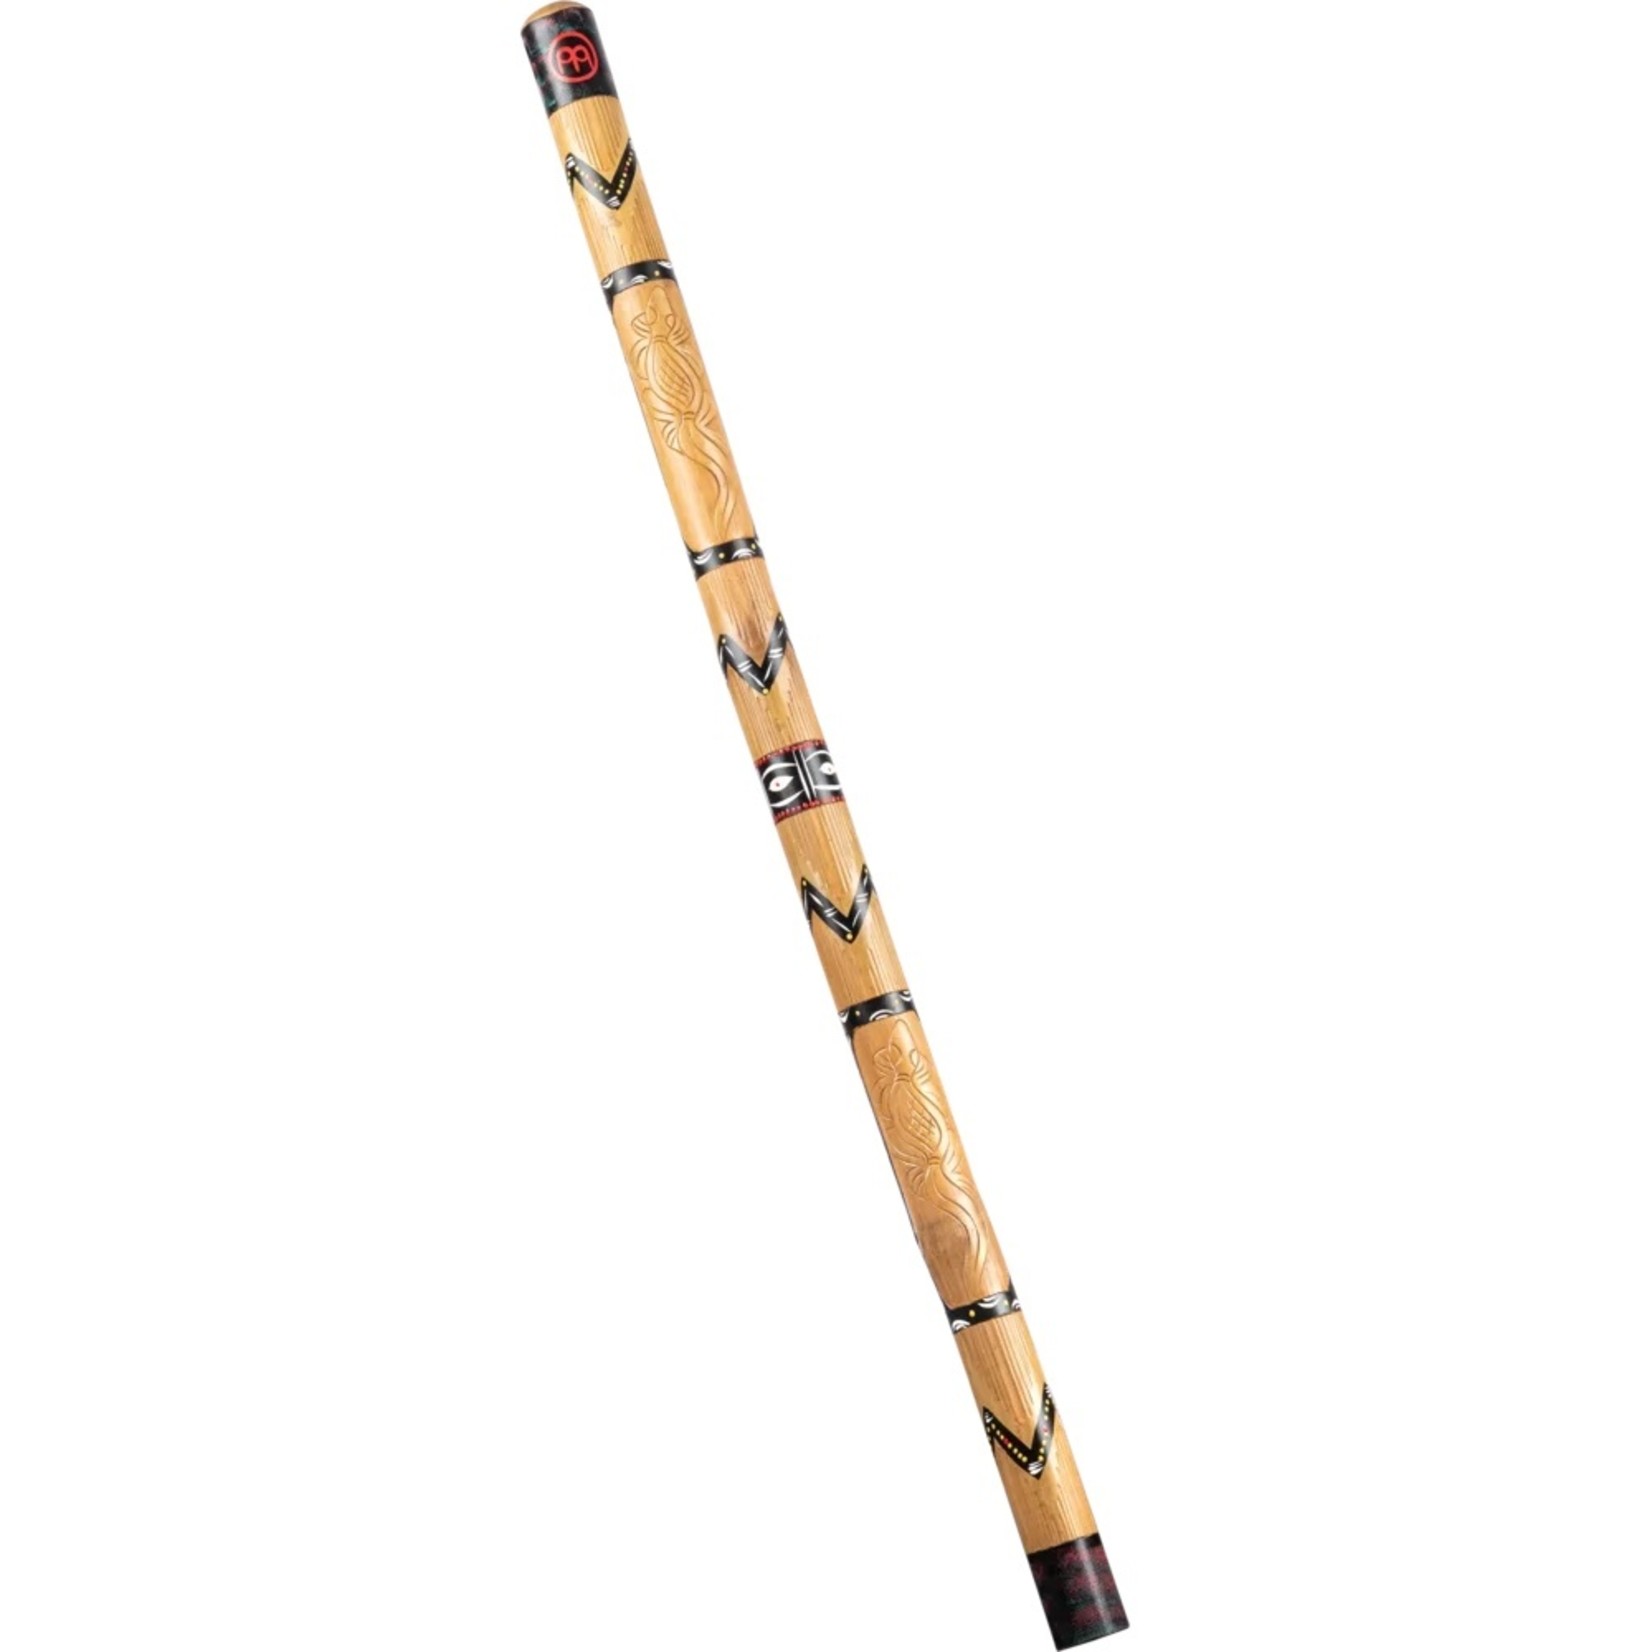 Meinl Meinl Didgeridoo bamboo, 47", brown